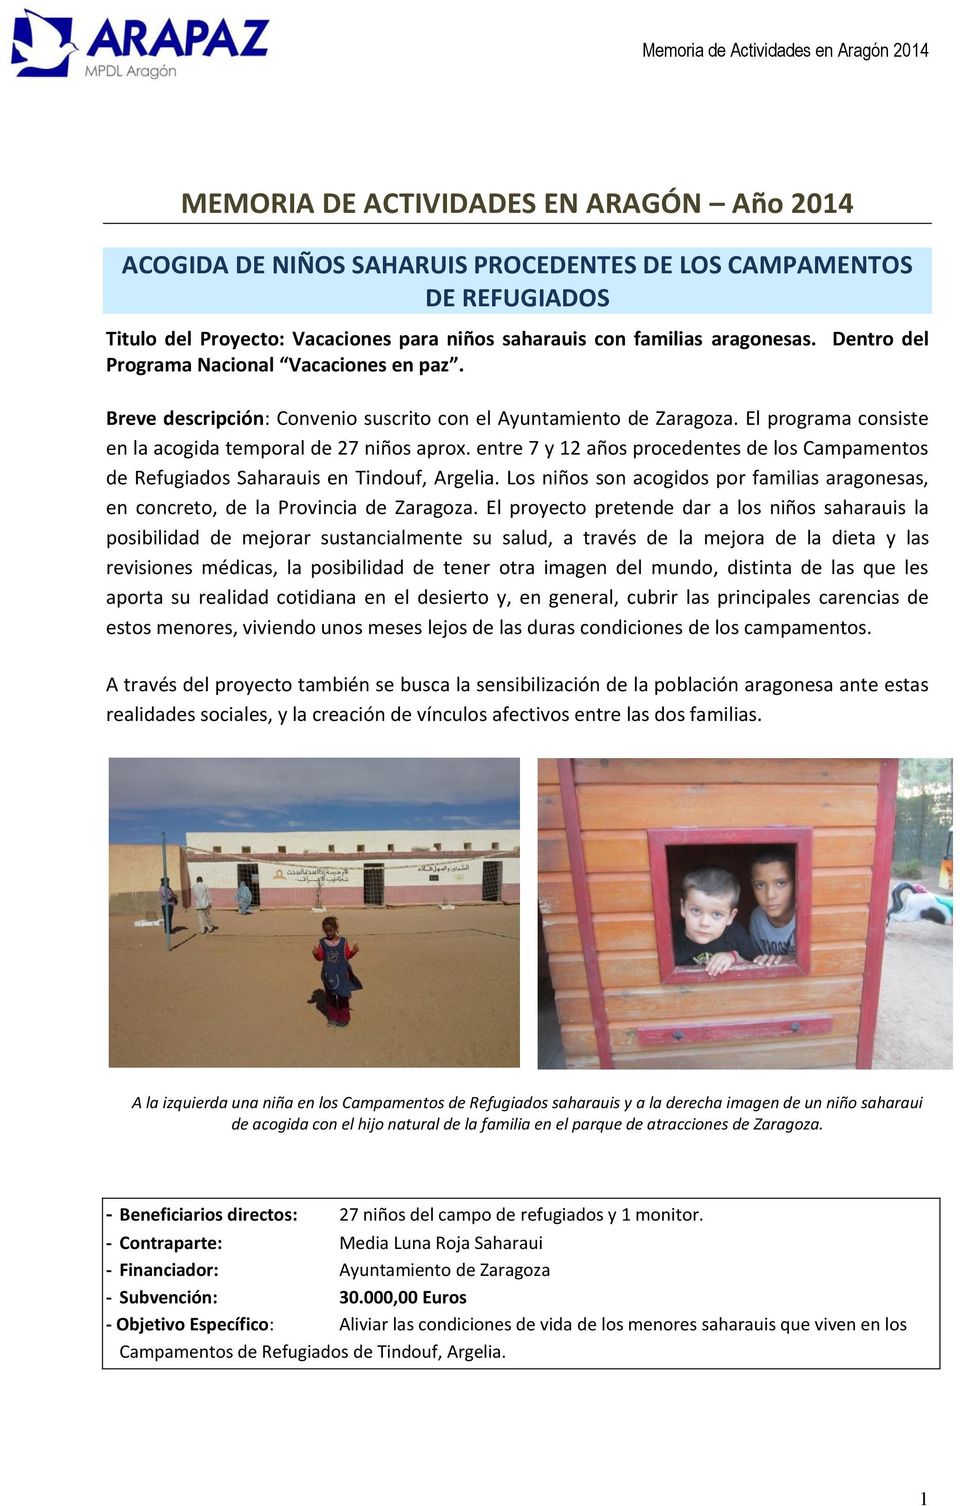 entre 7 y 12 años procedentes de los Campamentos de Refugiados Saharauis en Tindouf, Argelia. Los niños son acogidos por familias aragonesas, en concreto, de la Provincia de Zaragoza.